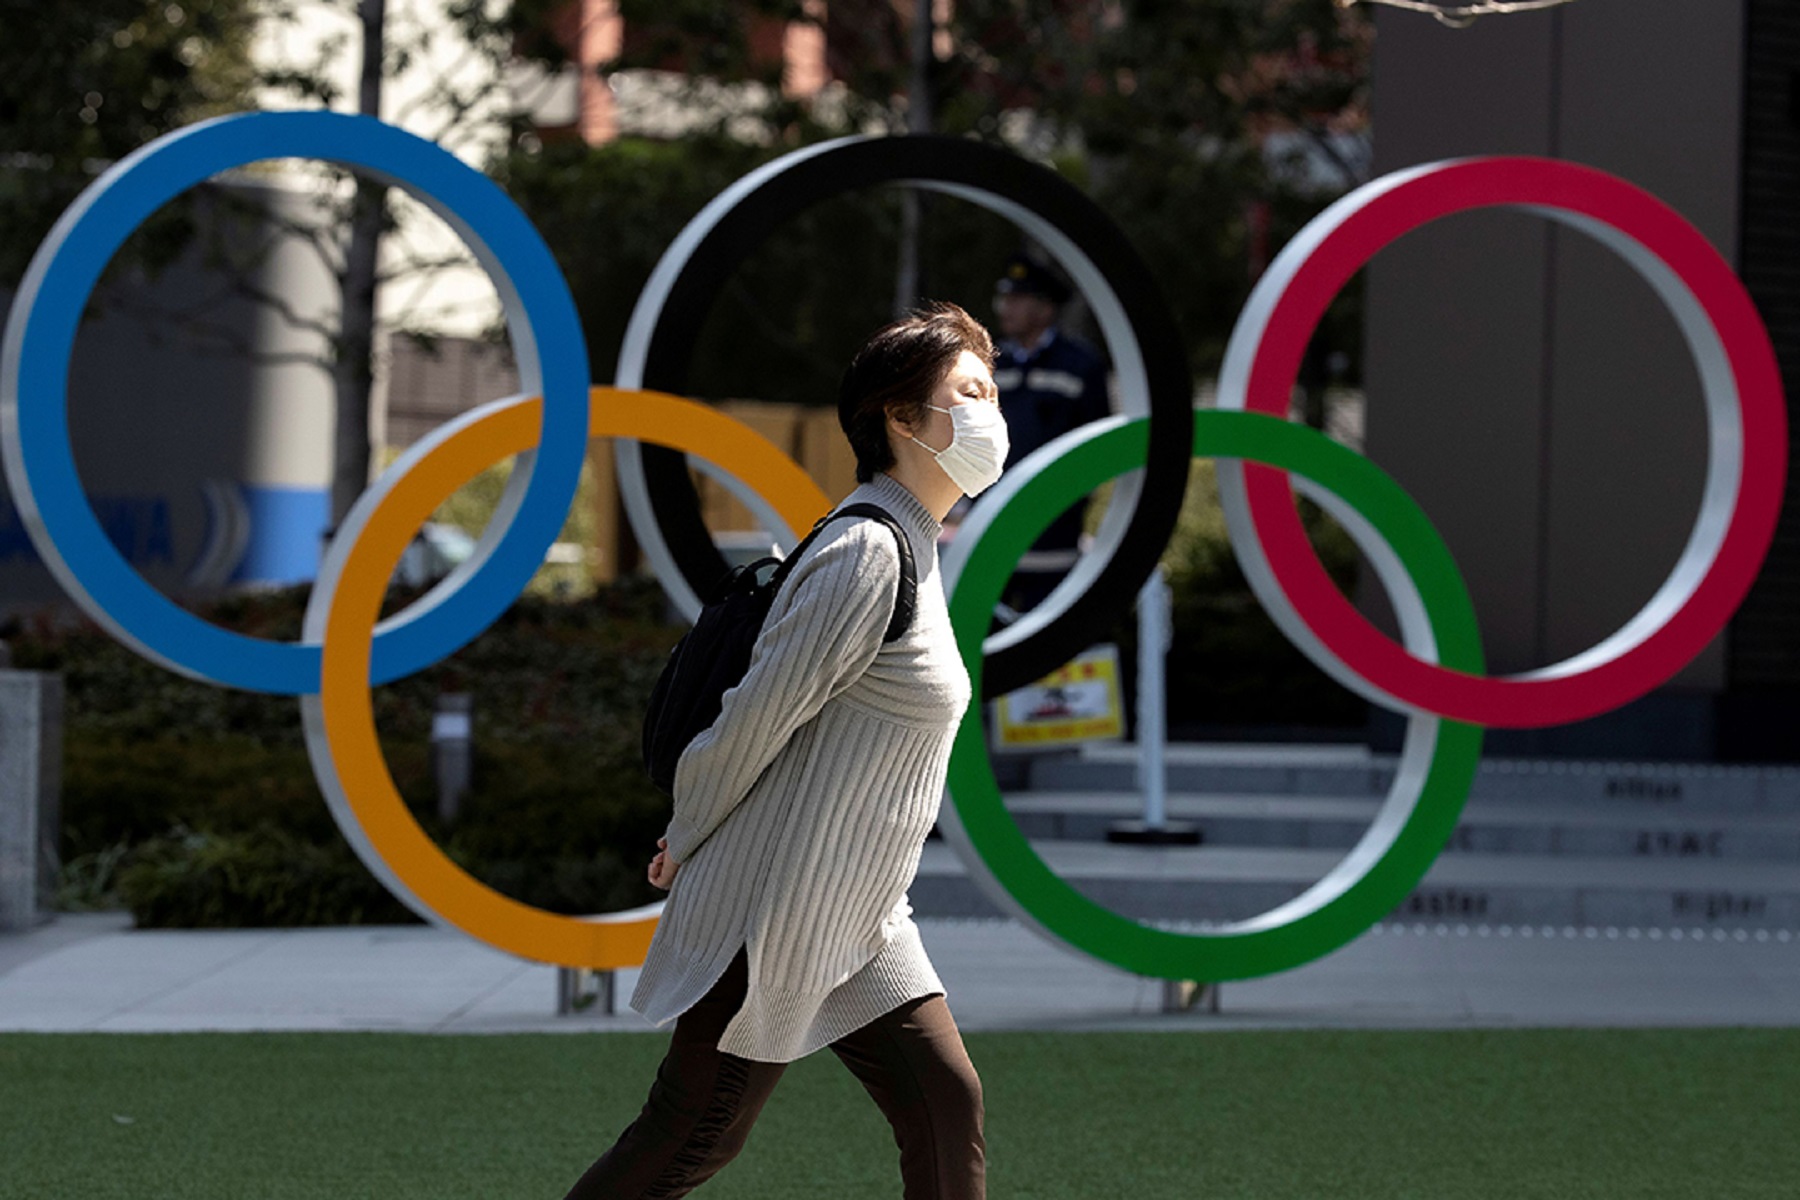 Ολυμπιακοί Αγώνες: Μέτρα για την ομαλή διεξαγωγή της κορυφαίας αθλητικής διοργάνωσης στο Τόκιο λόγω κορωνοϊού